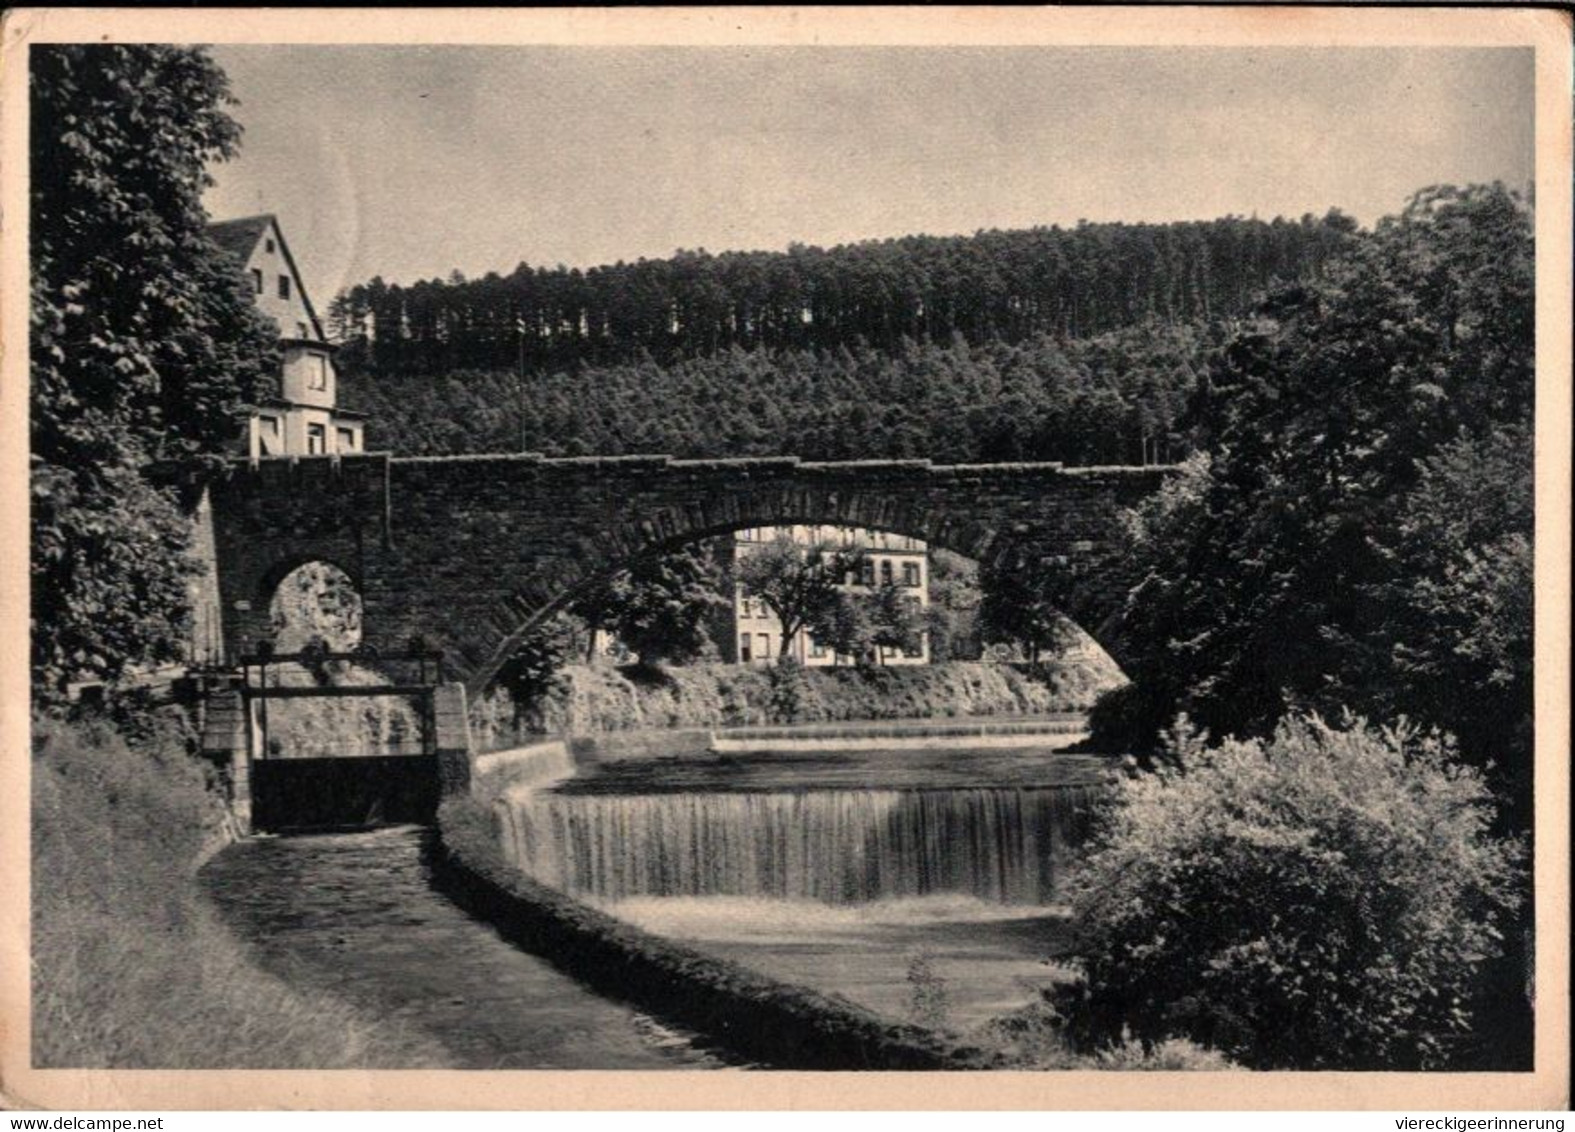 ! 1936 Alte Ansichtskarte Aus Pforzheim, Dillweissenstein, Brücke, Bridge, Nagold, Briefmarke Mit Firmenlochung, Perfin - Bridges